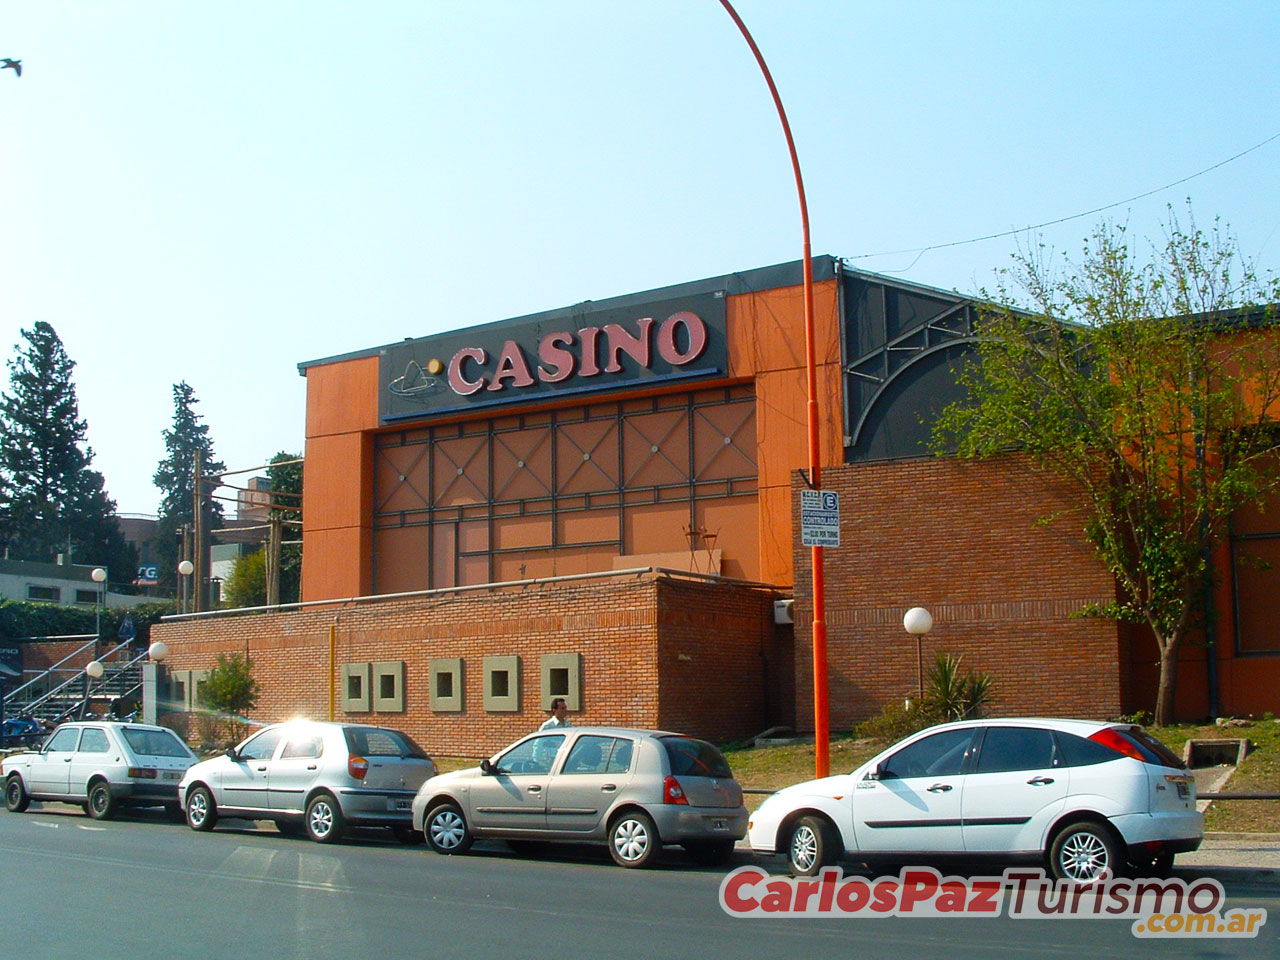 Casino de Carlos Paz - Imagen: Carlospazturismo.com.ar